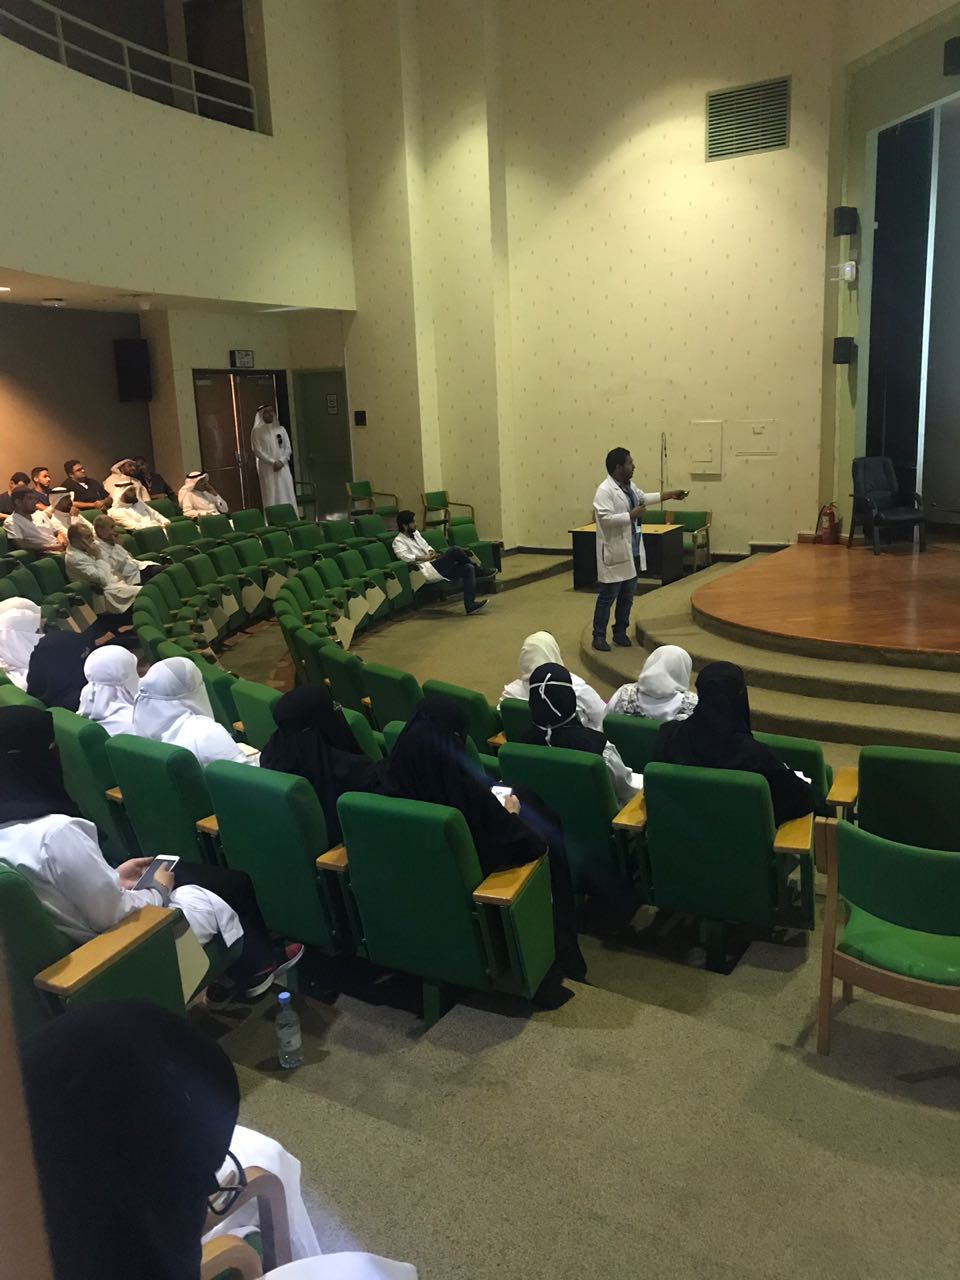 المركز السعودي لسلامة المرضى والرعاية الصيدلية ينظمان برامج تدريبية للمكلفين في الحج بالمدينة المنورة